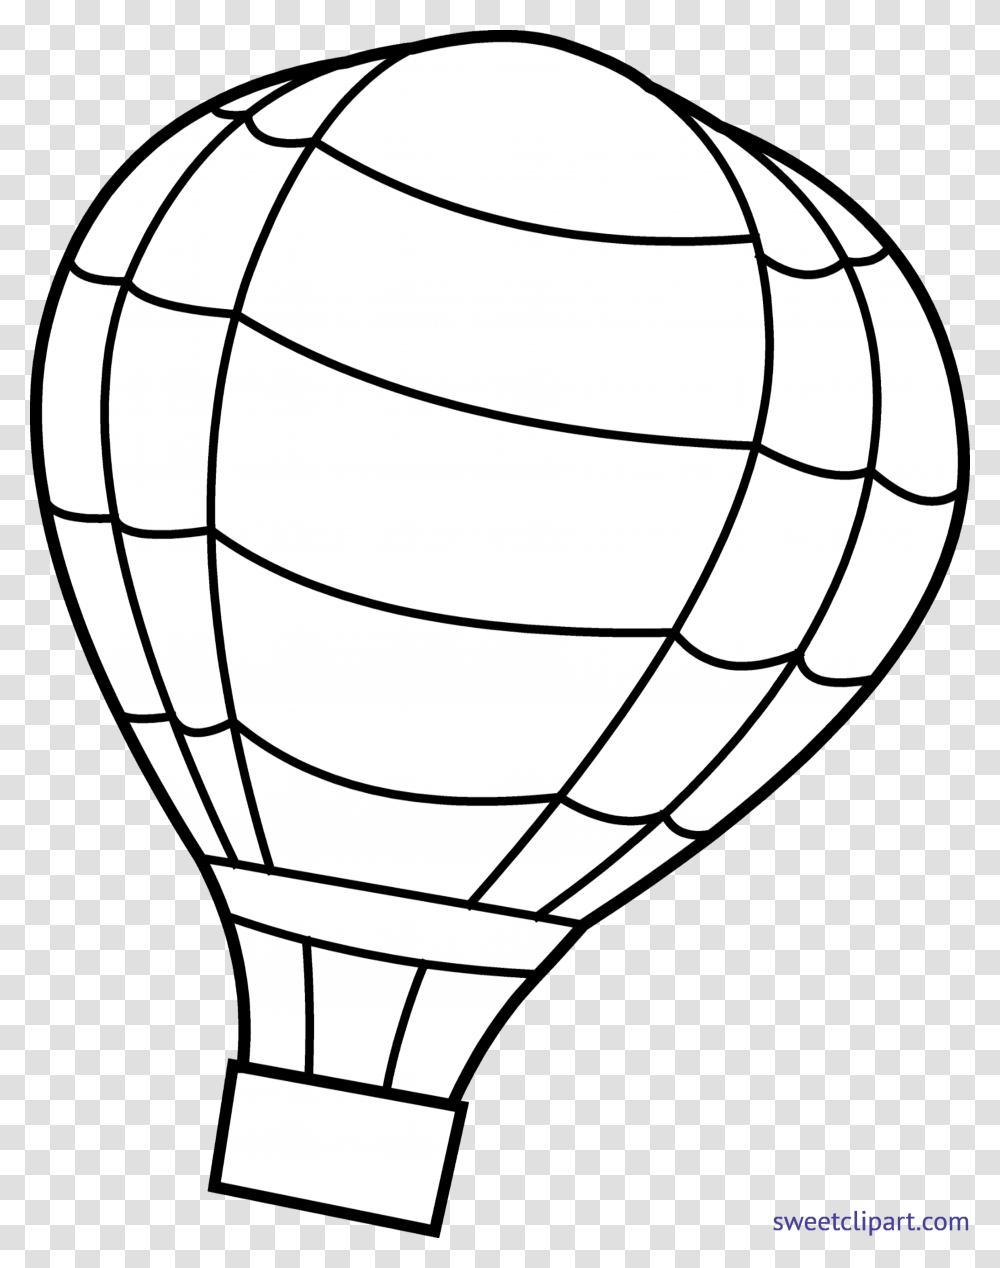 Hot Air Balloon Lineart Clip Art, Transportation, Vehicle, Aircraft, Soccer Ball Transparent Png